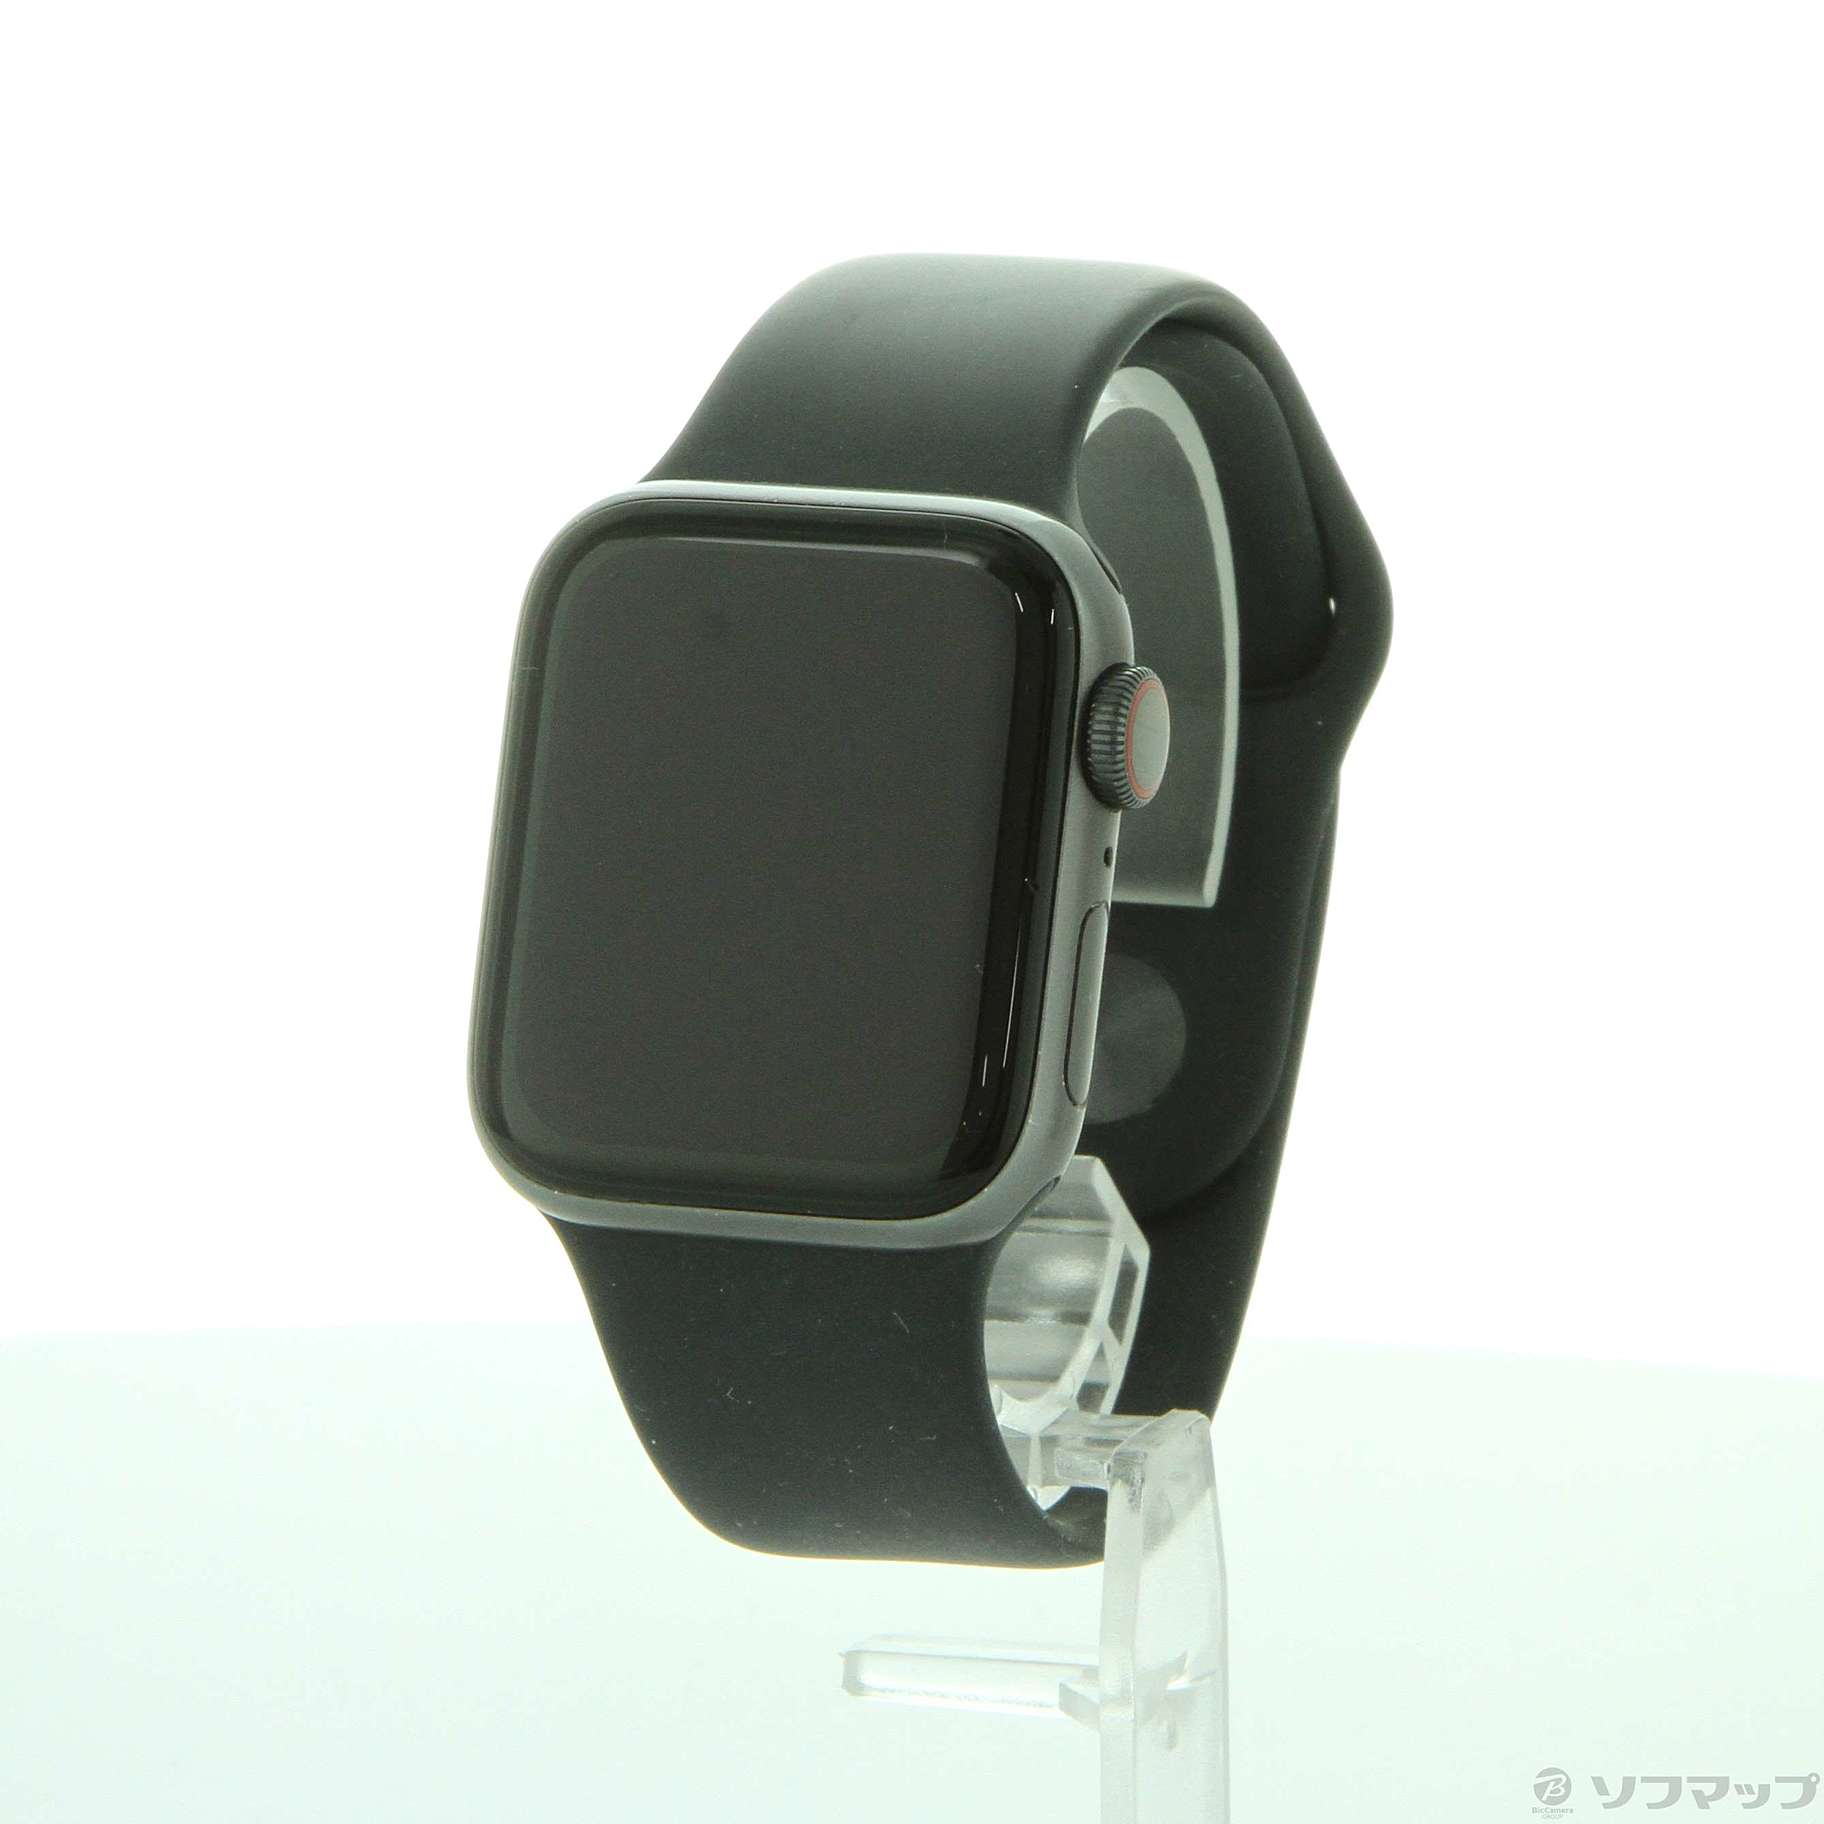 (中古)Apple Apple Watch Series 5 GPS + Cellular 40mm スペースグレイアルミニウムケース ブラックスポーツバンド(269-ud)